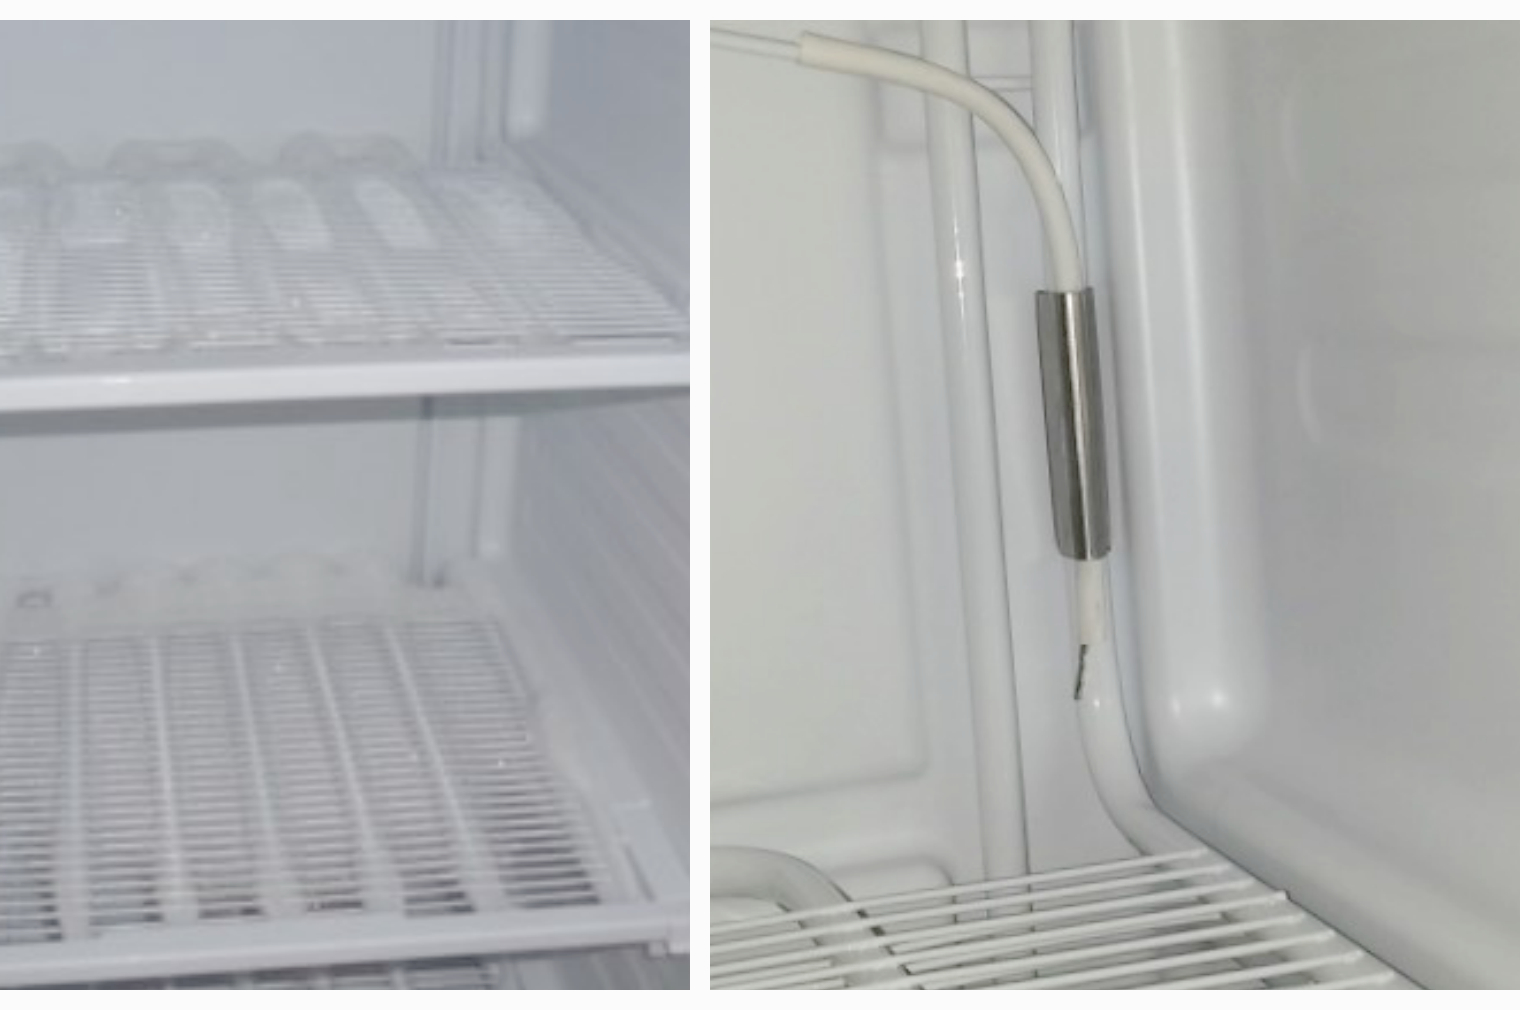 4 полки в морозилке холодильника